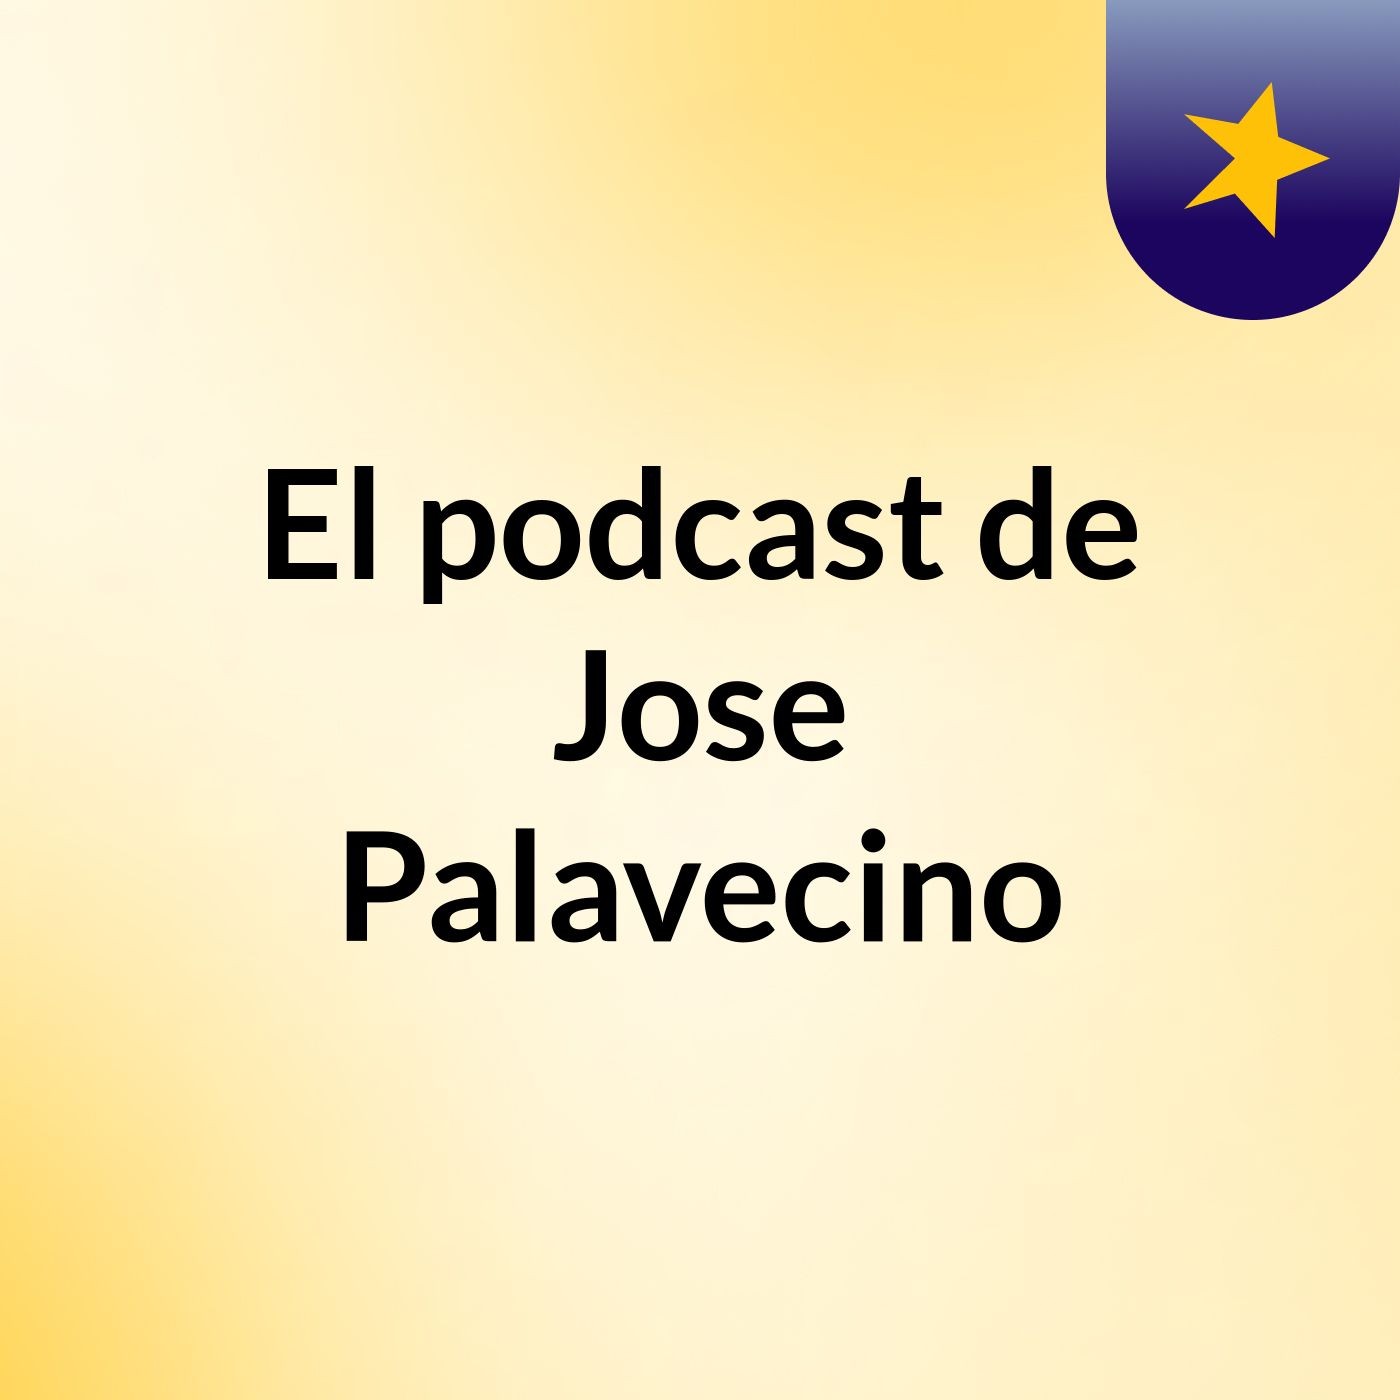 El podcast de Jose Palavecino